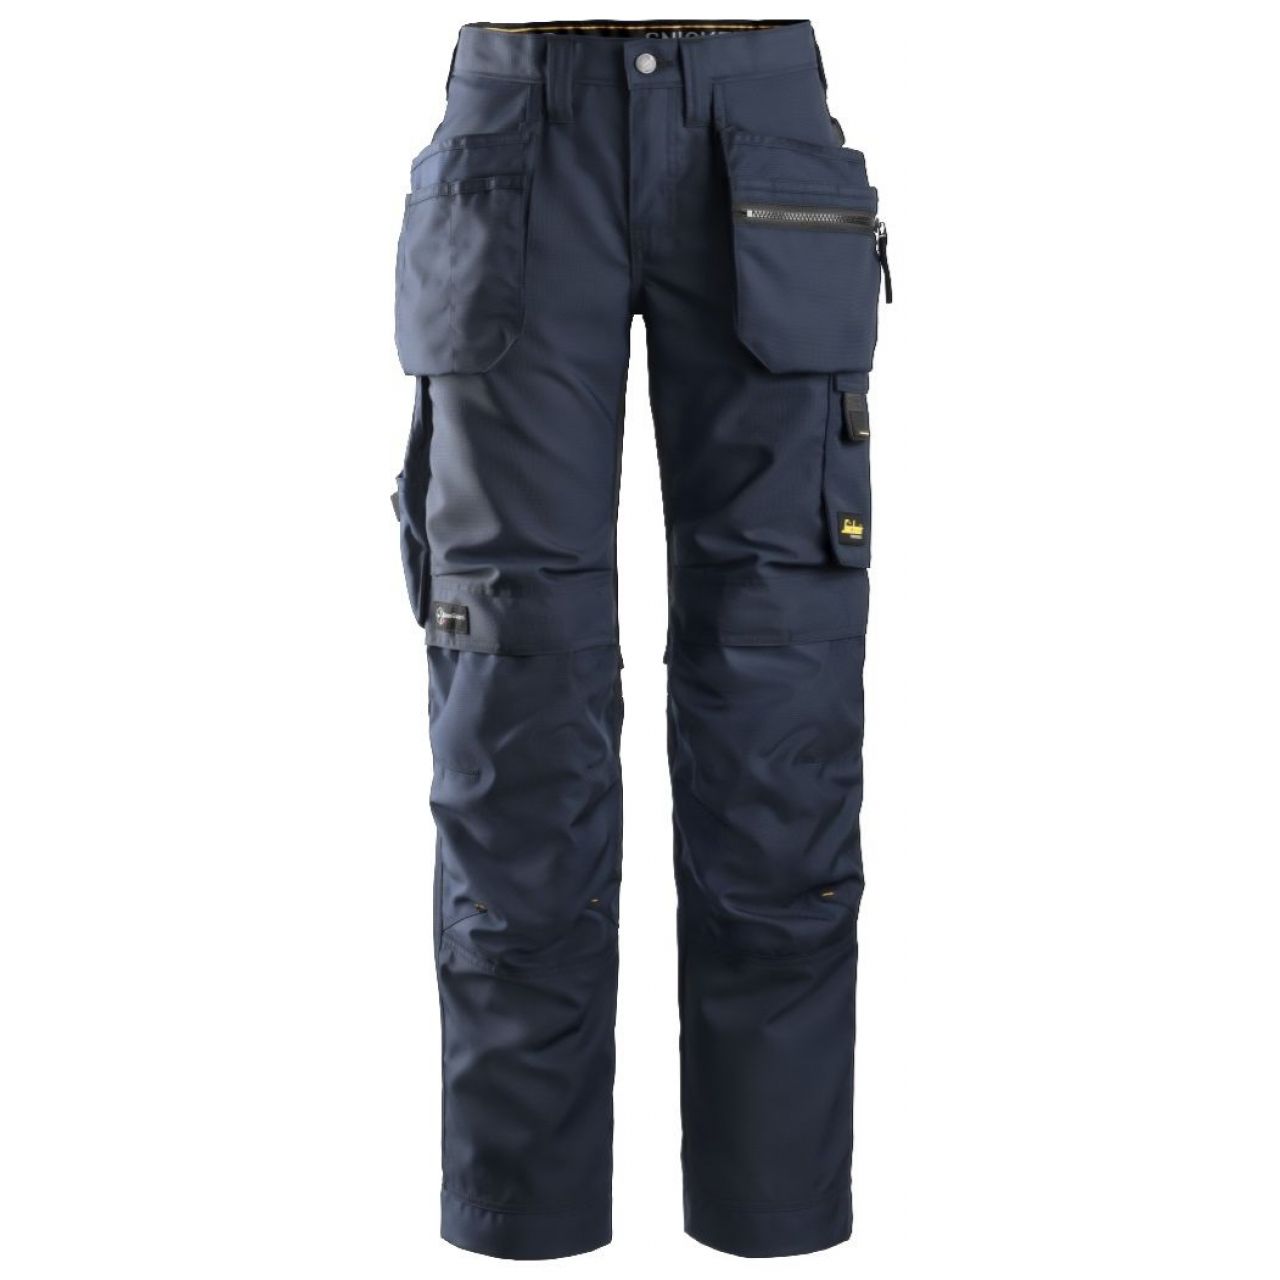 Pantalon de mujer AllroundWork+ con bolsillos flotantes azul marino-negro talla 042